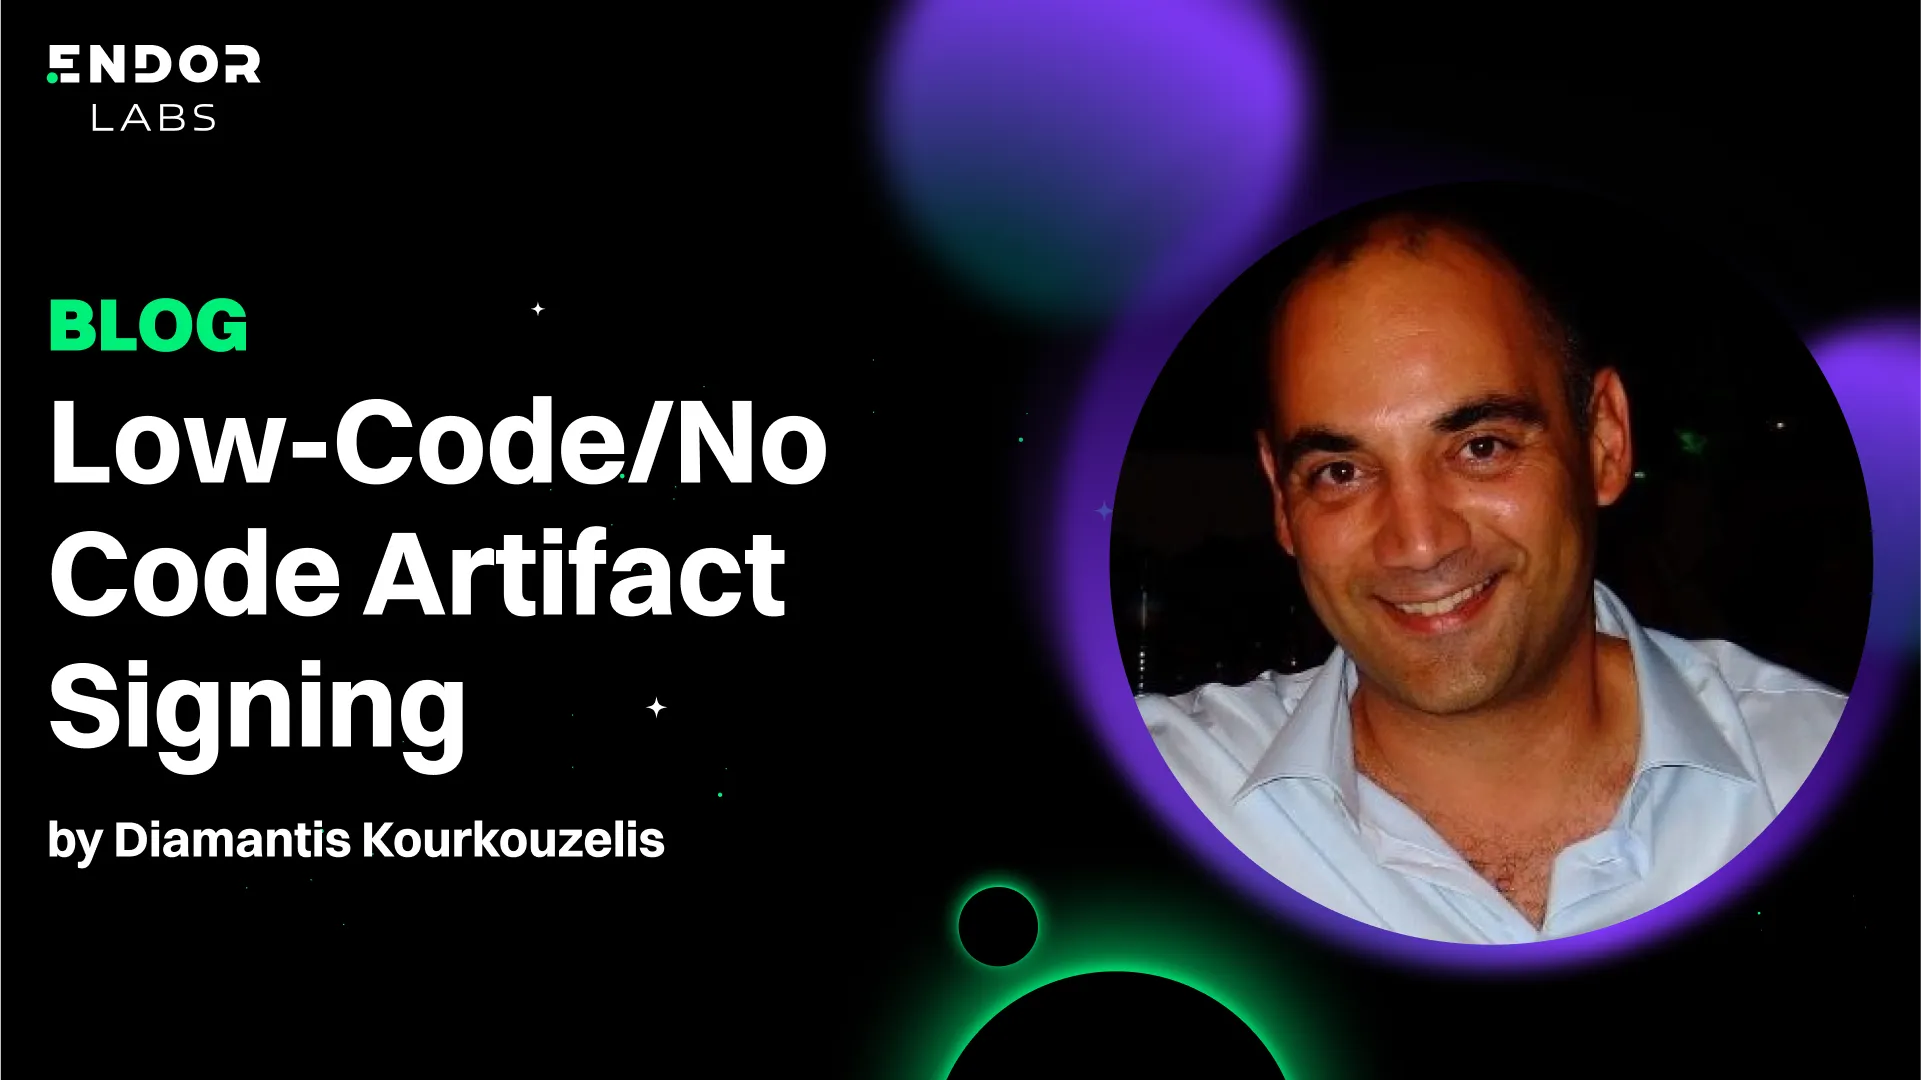 Low-Code/No Code Artifact Signing by Diamantis Kourkouzelis